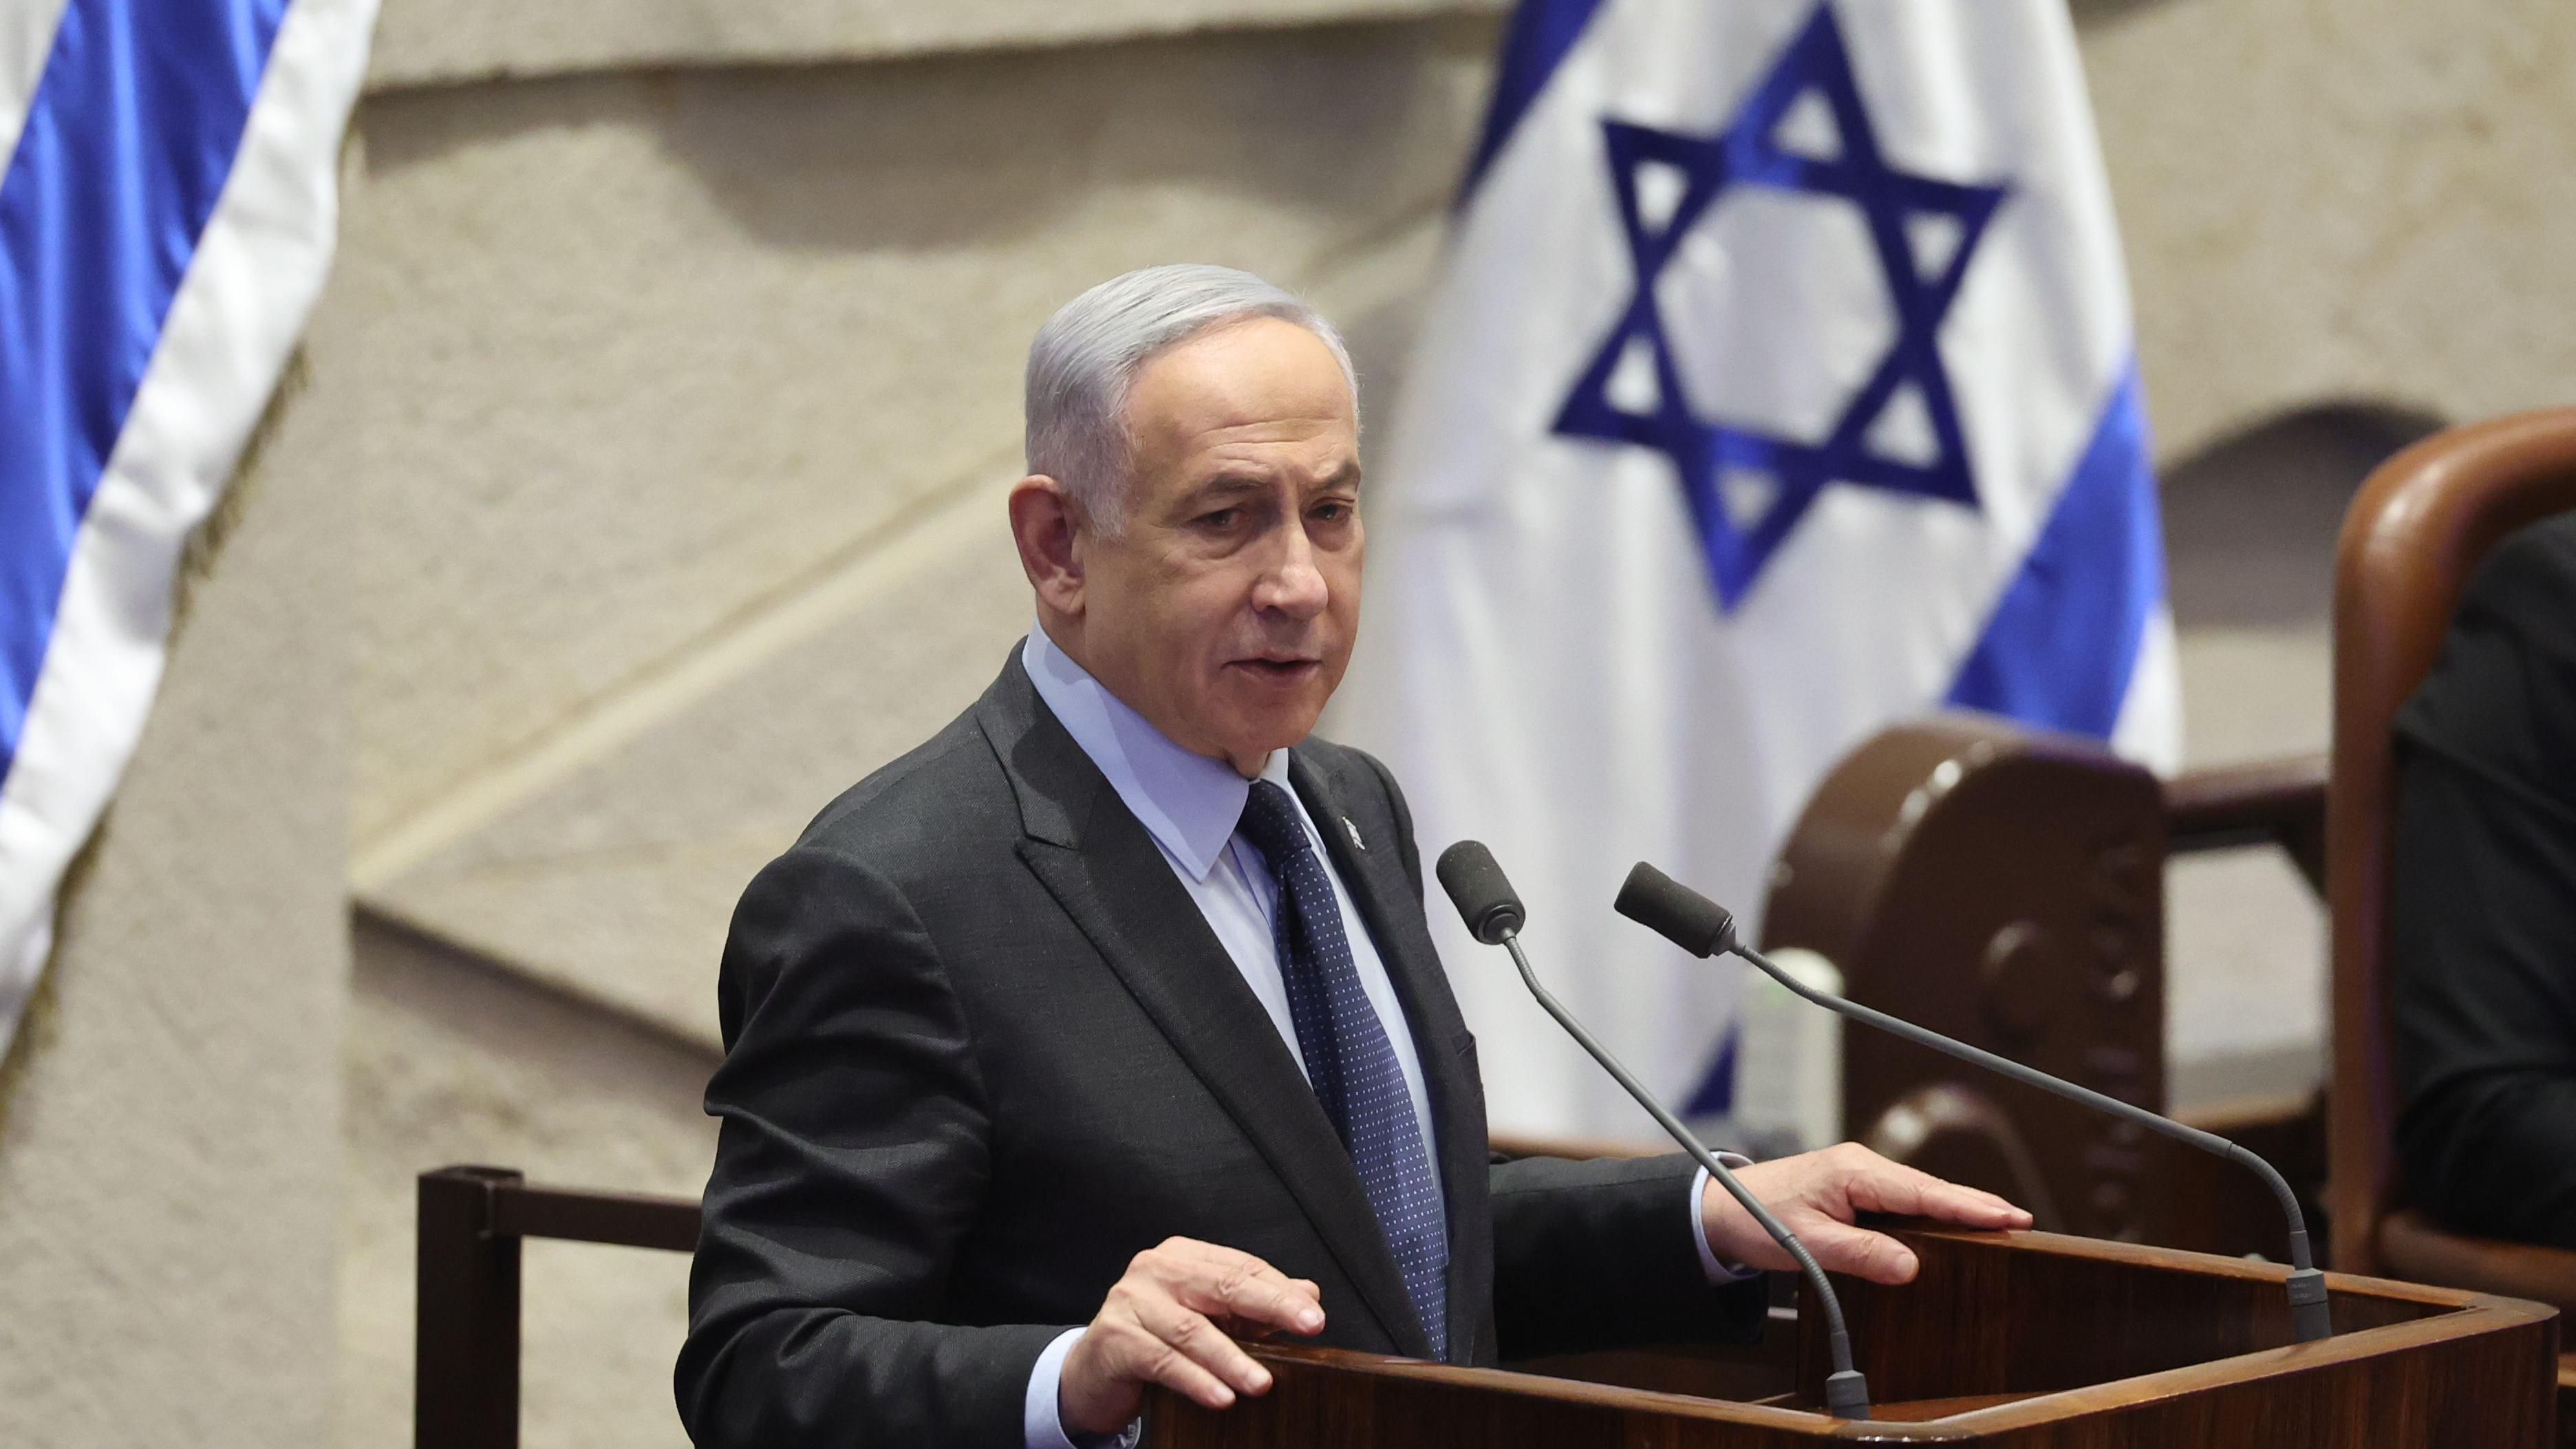 netanyahu ‘ignorou recomendação’ sobre cortar financiamento do hamas, diz ex-chefe do mossad